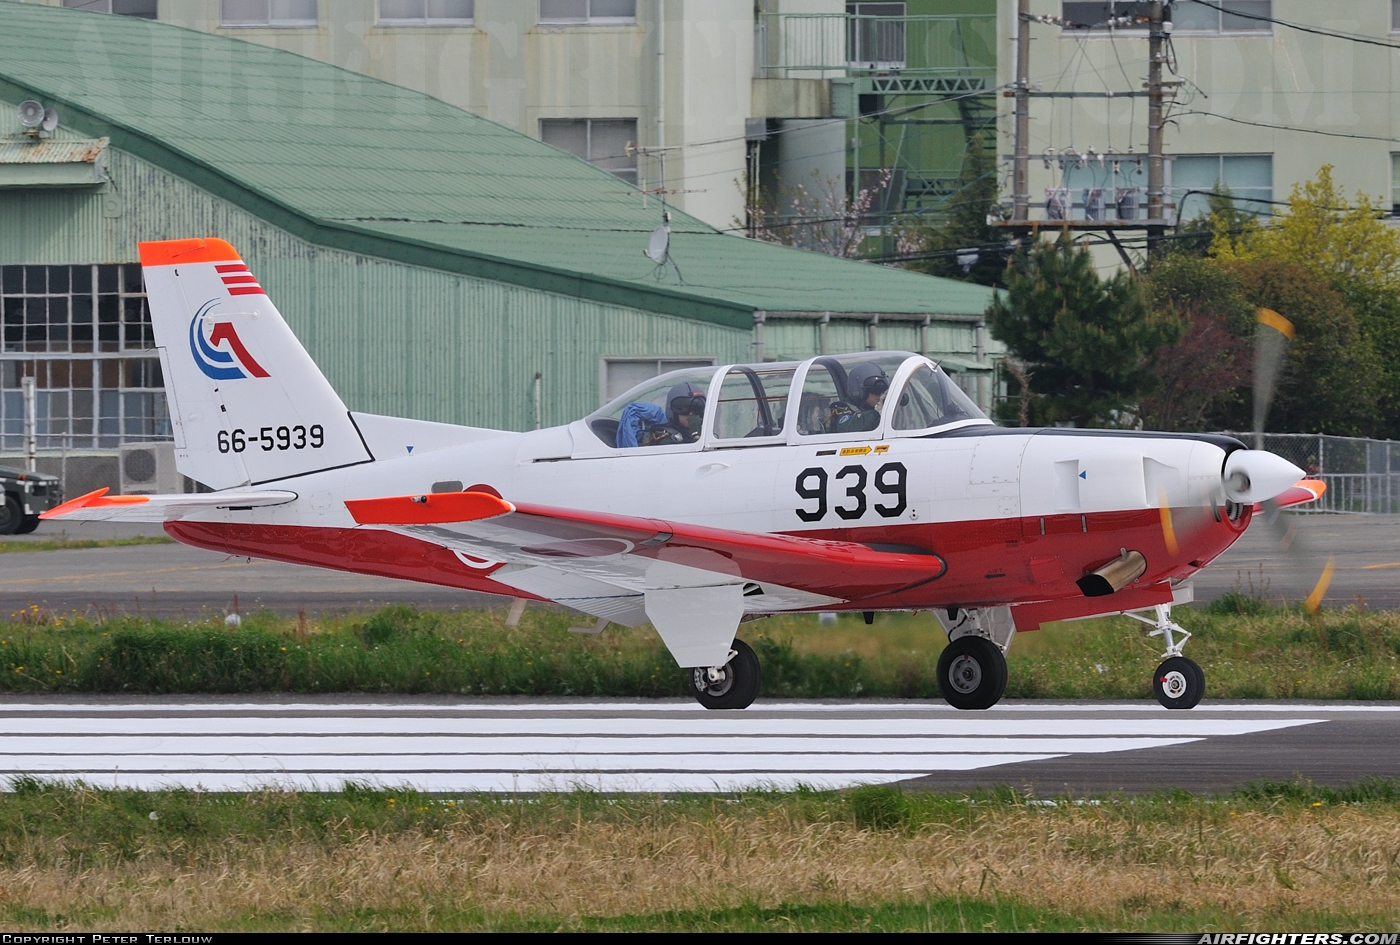 Japan - Air Force Fuji T-7 66-5939 at Shizuhama (RJNY), Japan